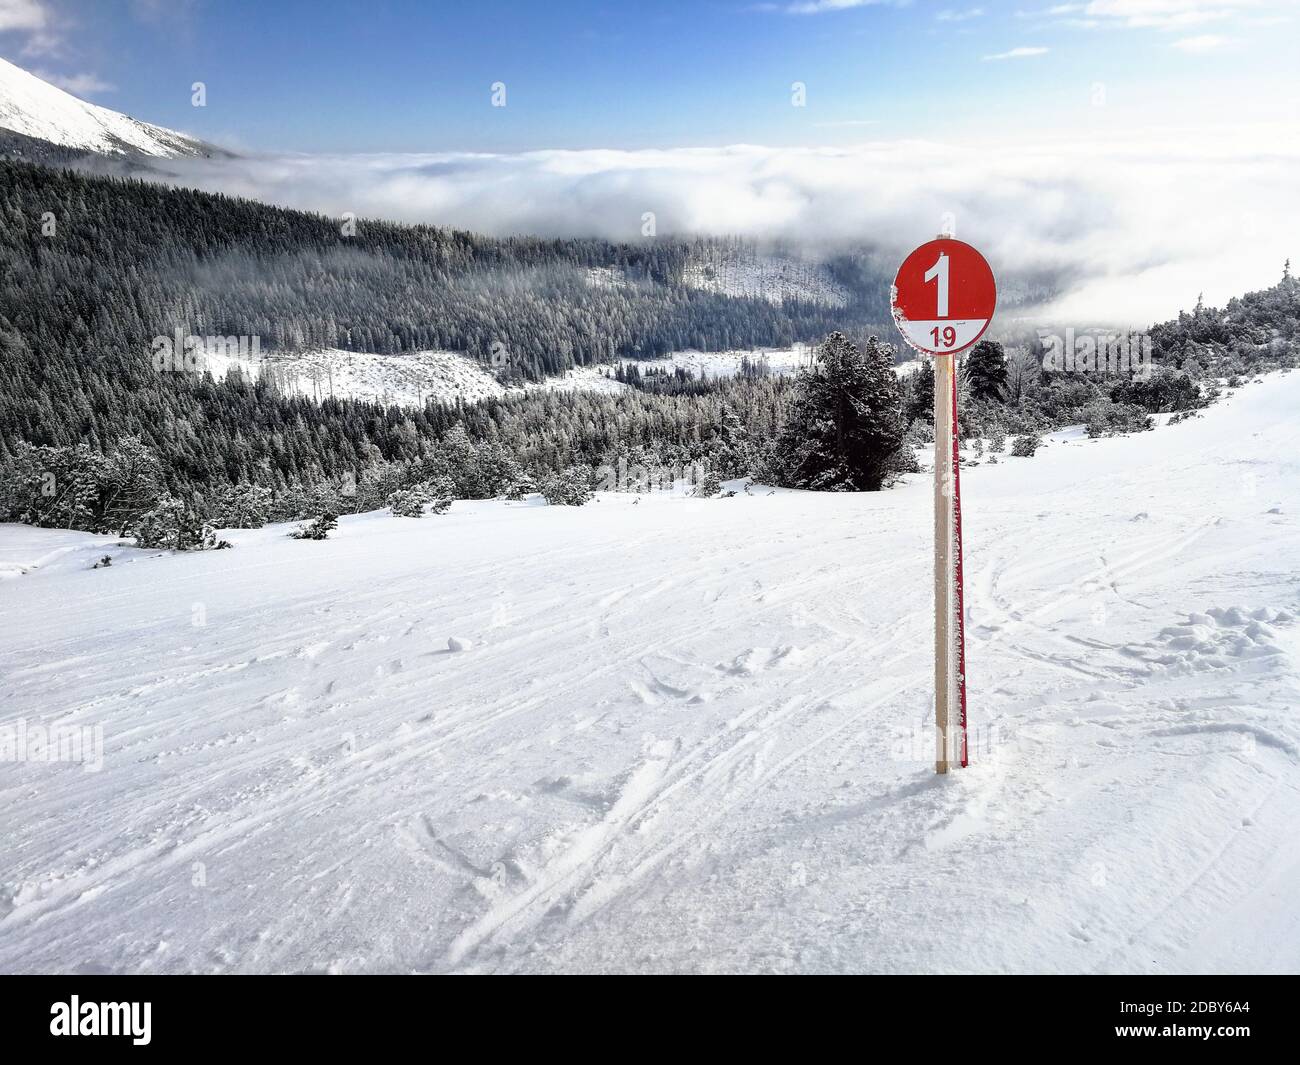 1 route de ski rouge signe sur la neige fraîche avec des forêts couvertes de neige et le ciel en arrière-plan. Ski Strbske Pleso, Slovaquie Banque D'Images